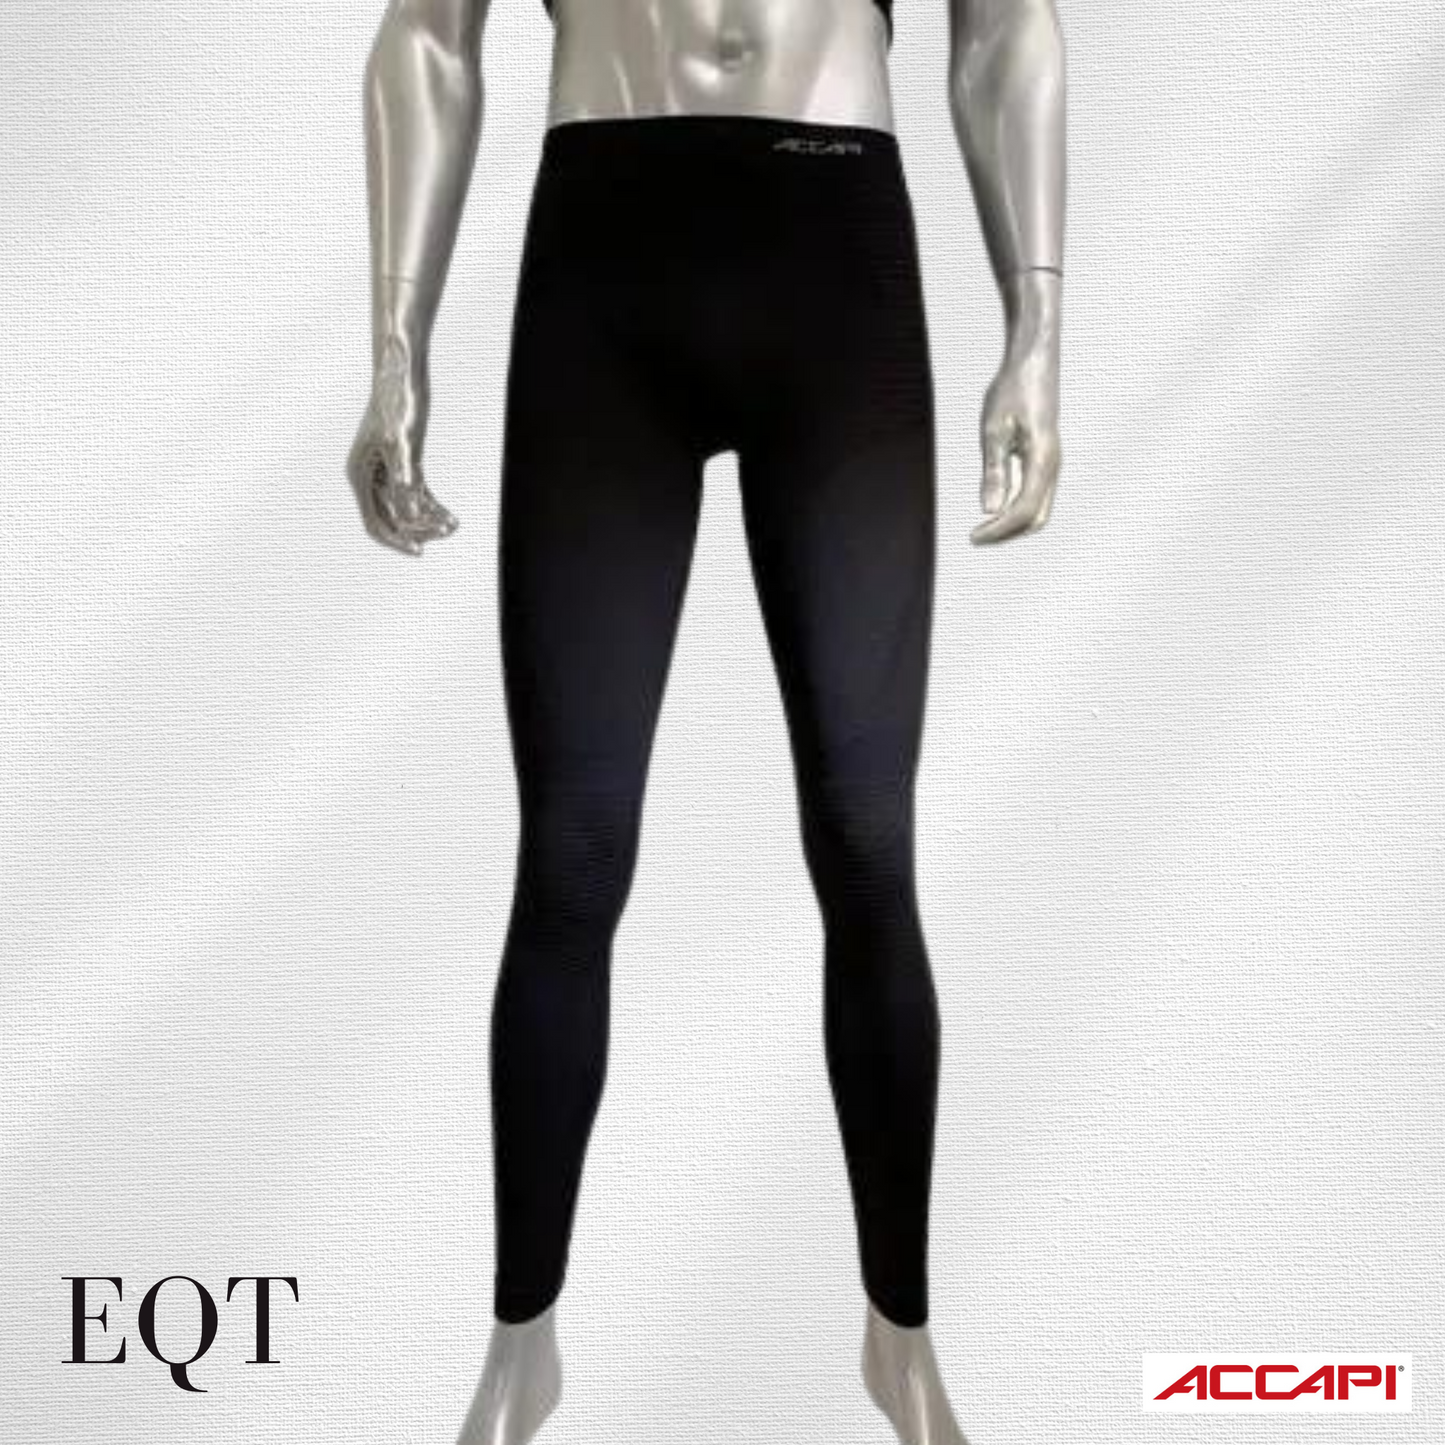 ACCAPI Accapi EQT SYNERGY Pants Men's EA803 Black